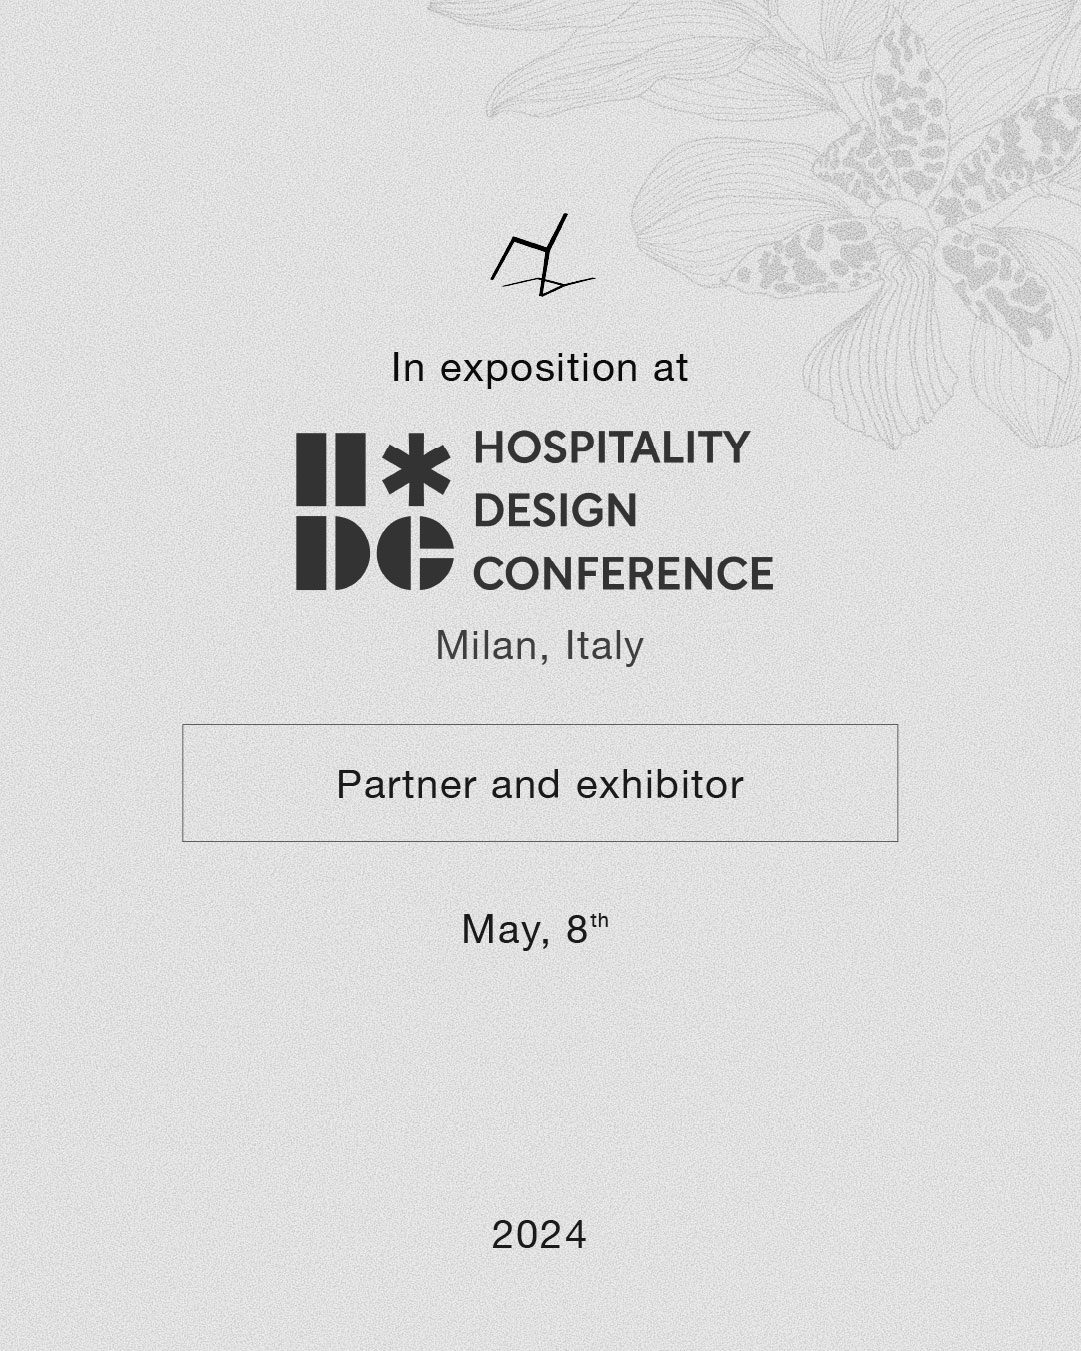 Hotel design conference, Milano